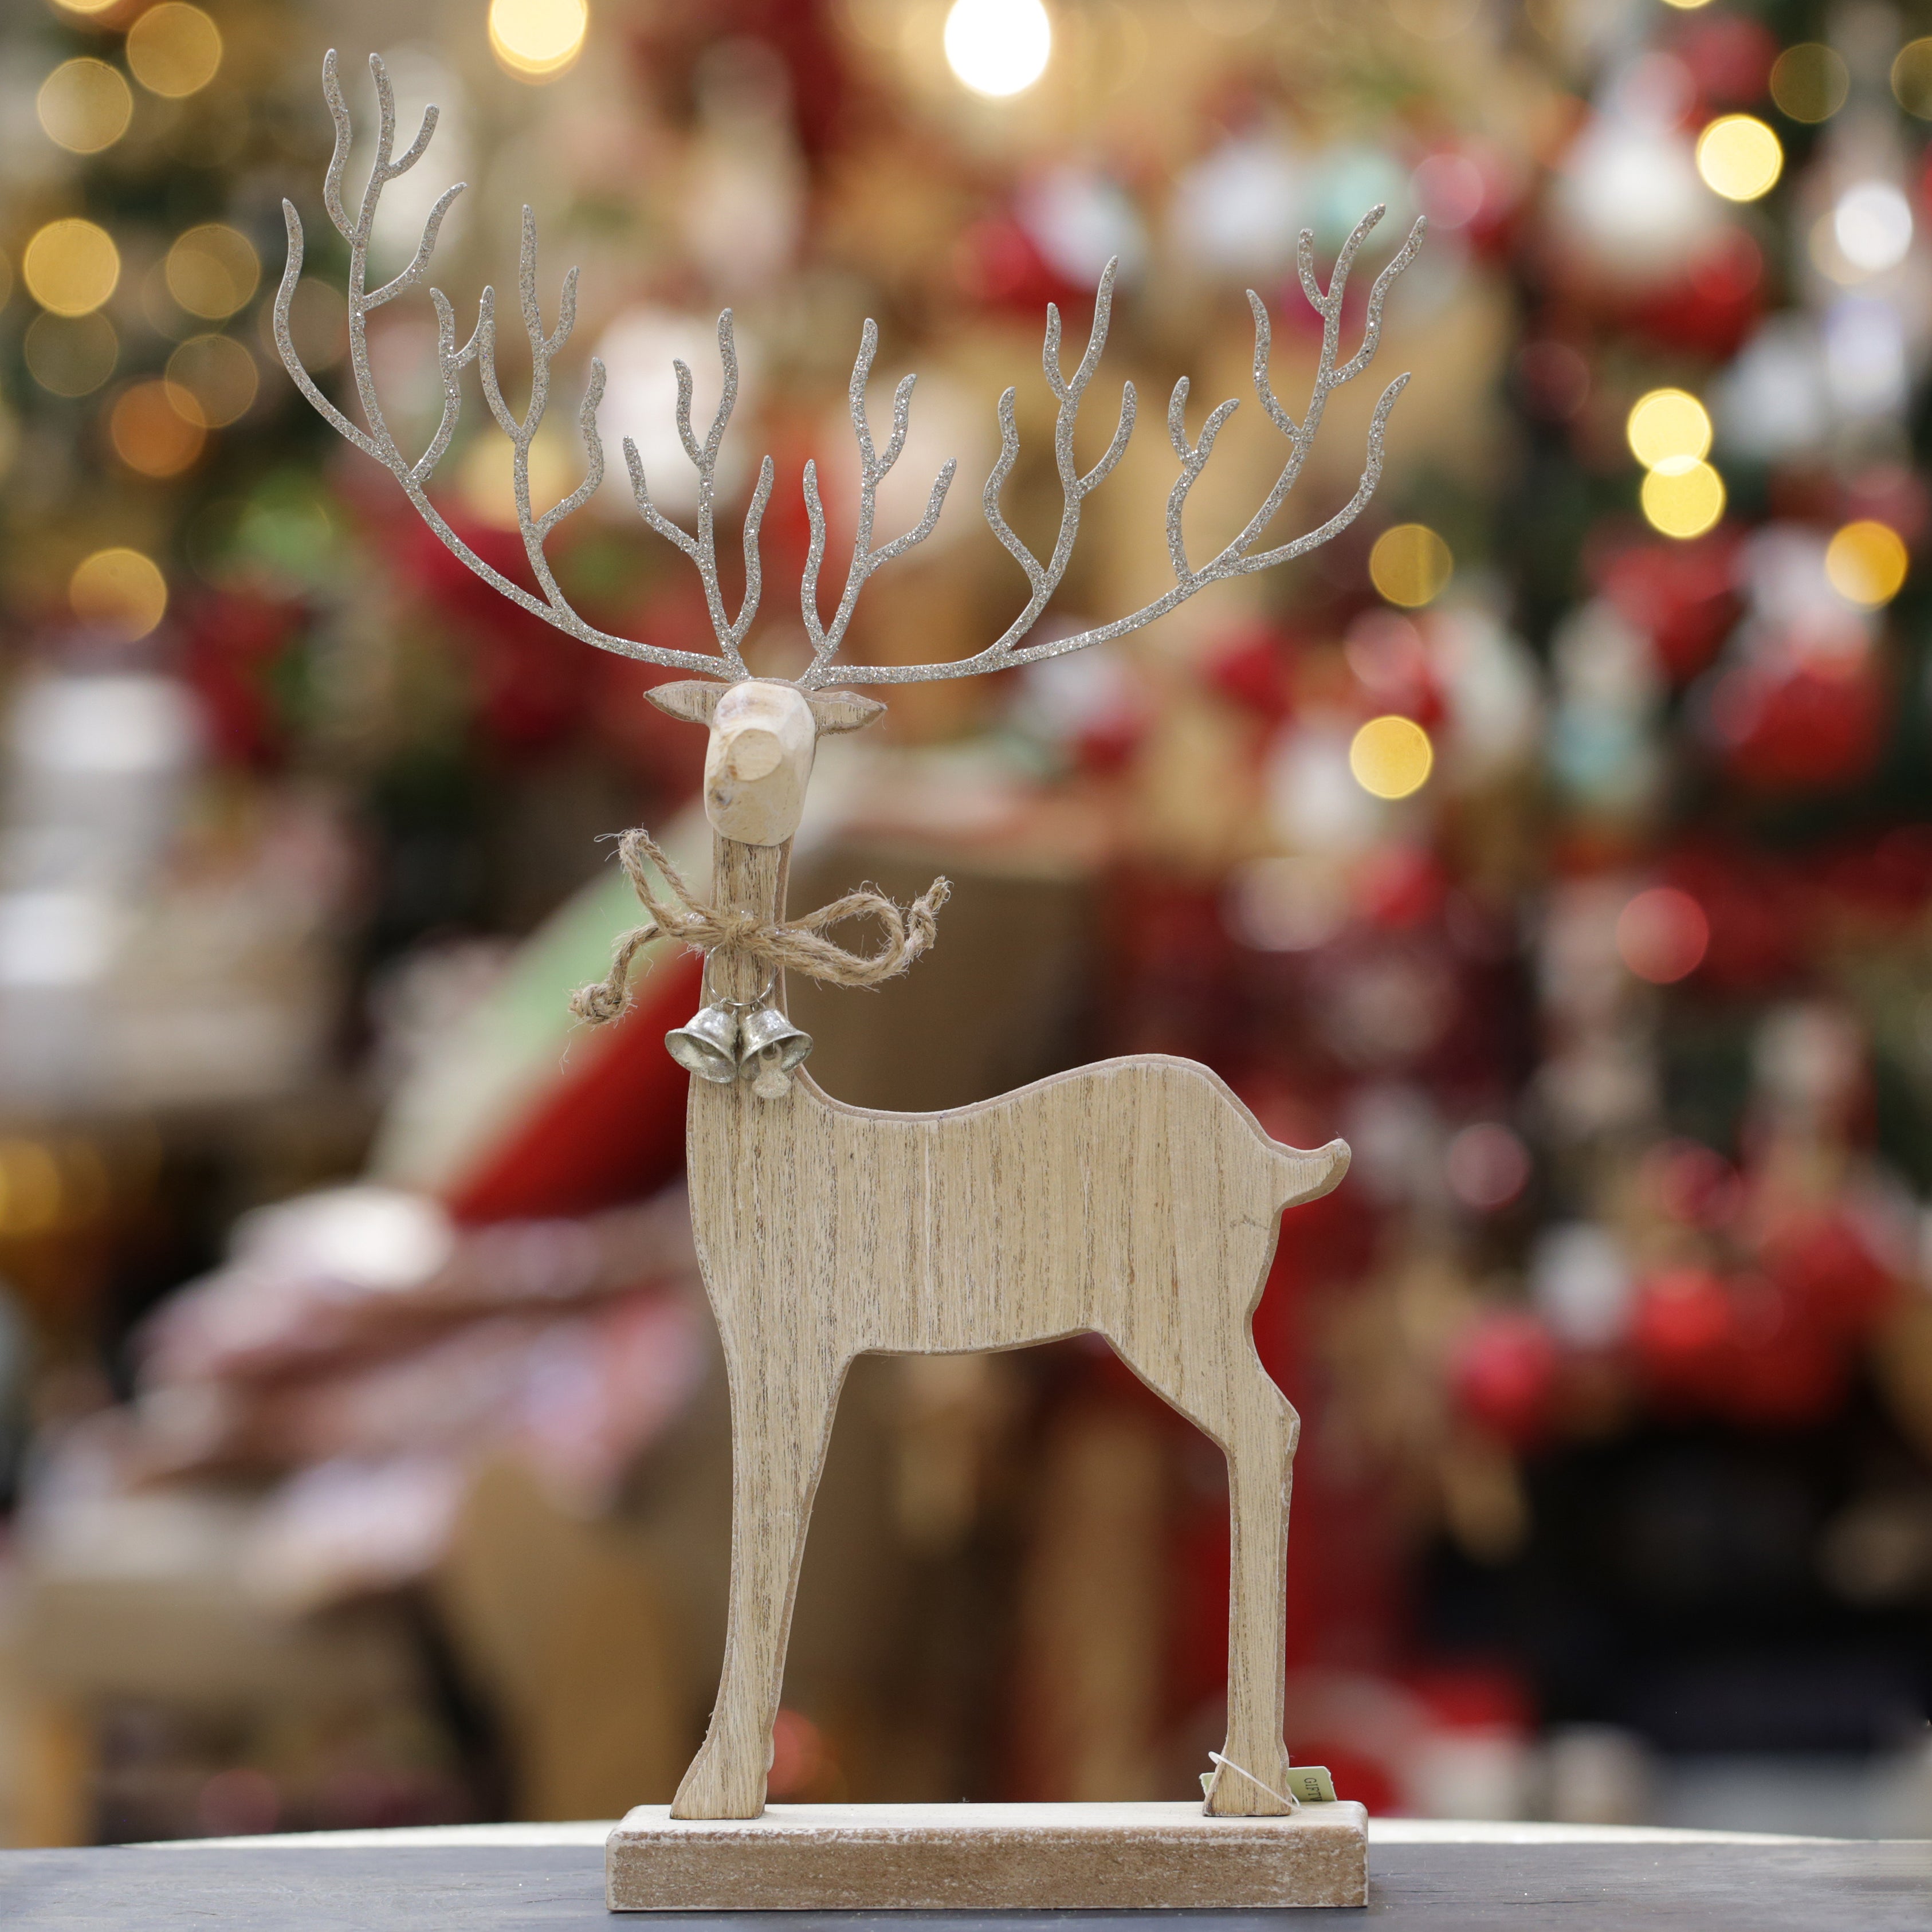 Rustic Wooden Reindeer Ornament